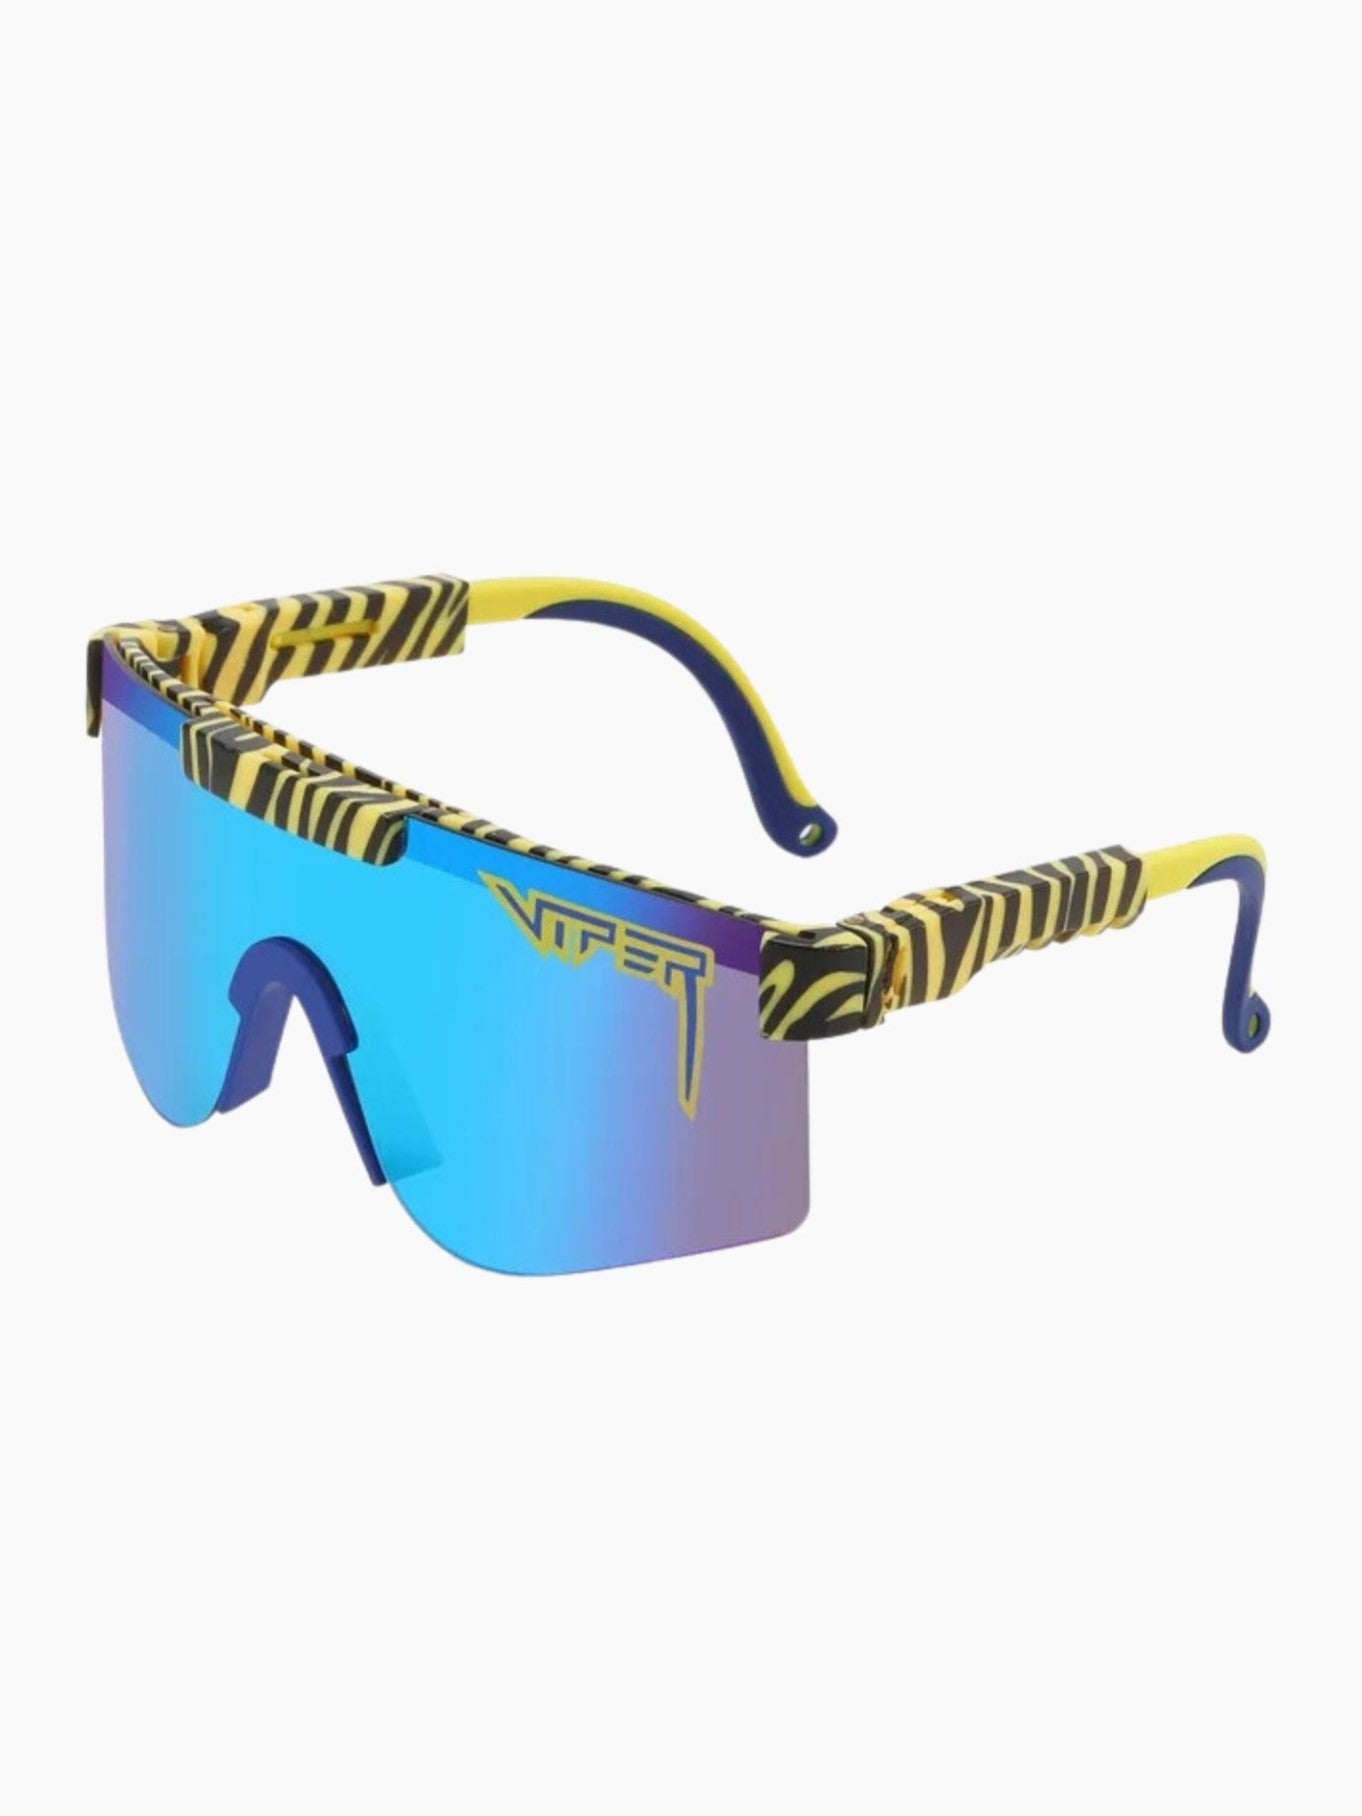 Tiger Pit Viper Sunglasses – Flock Fashion & Accessories